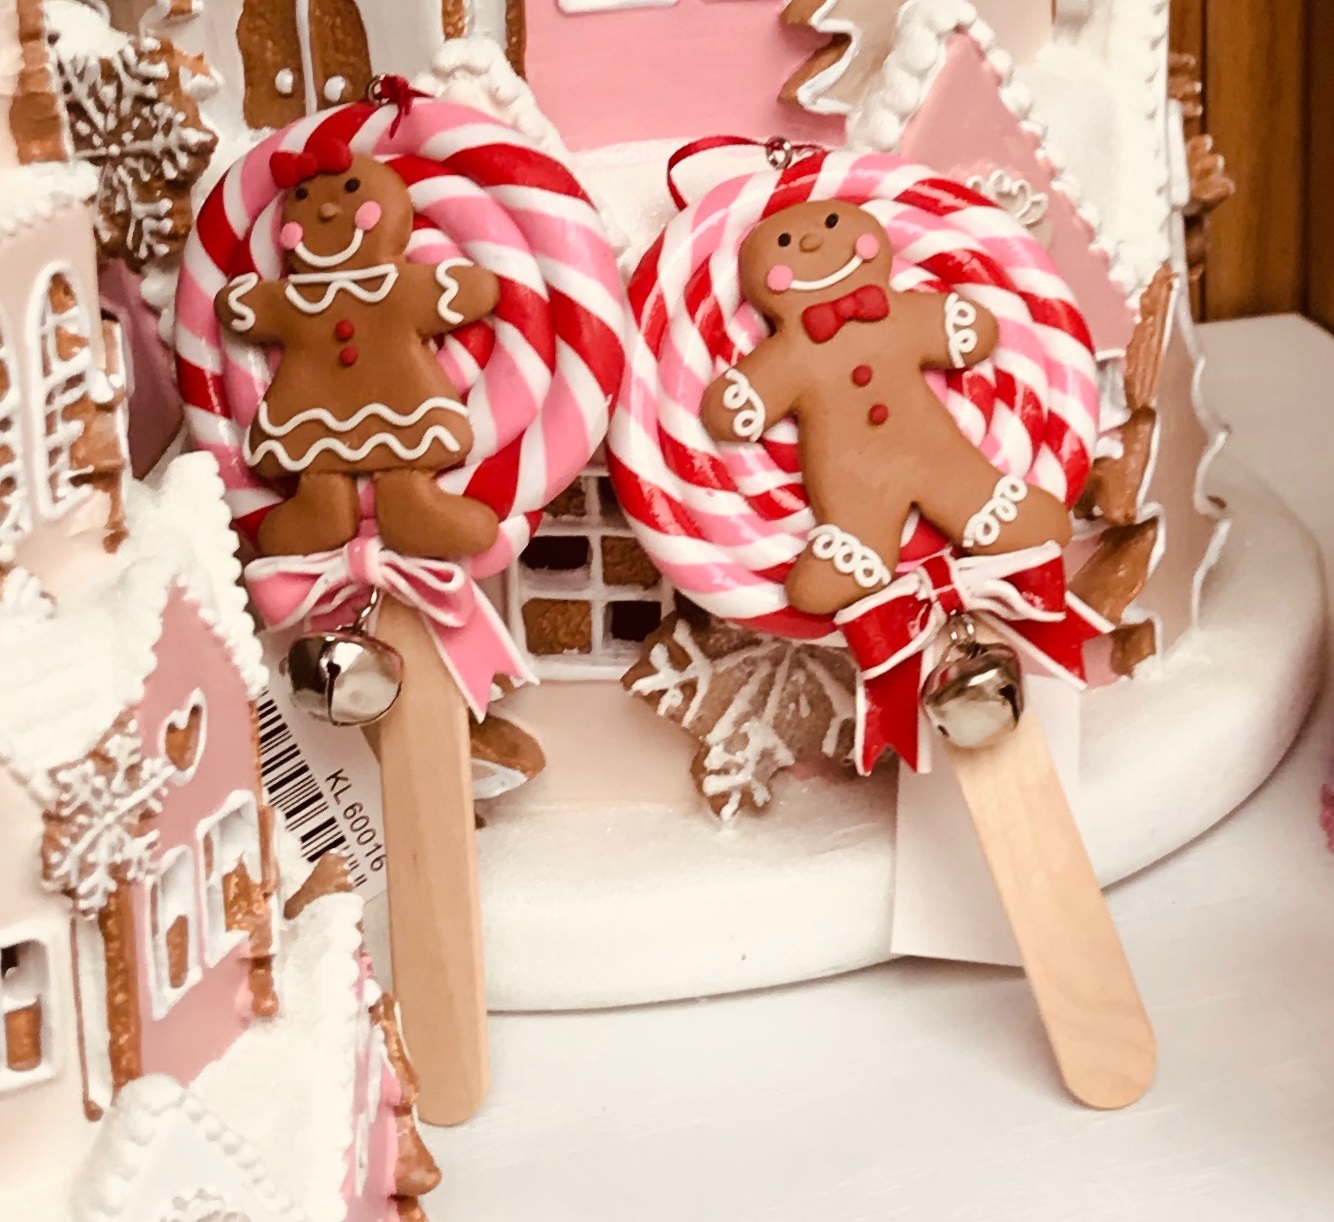 Appendino natalizio lecca lecca con omino di marzapane -disponibile in due modelli assortiti - h 13 cm - Goodwill